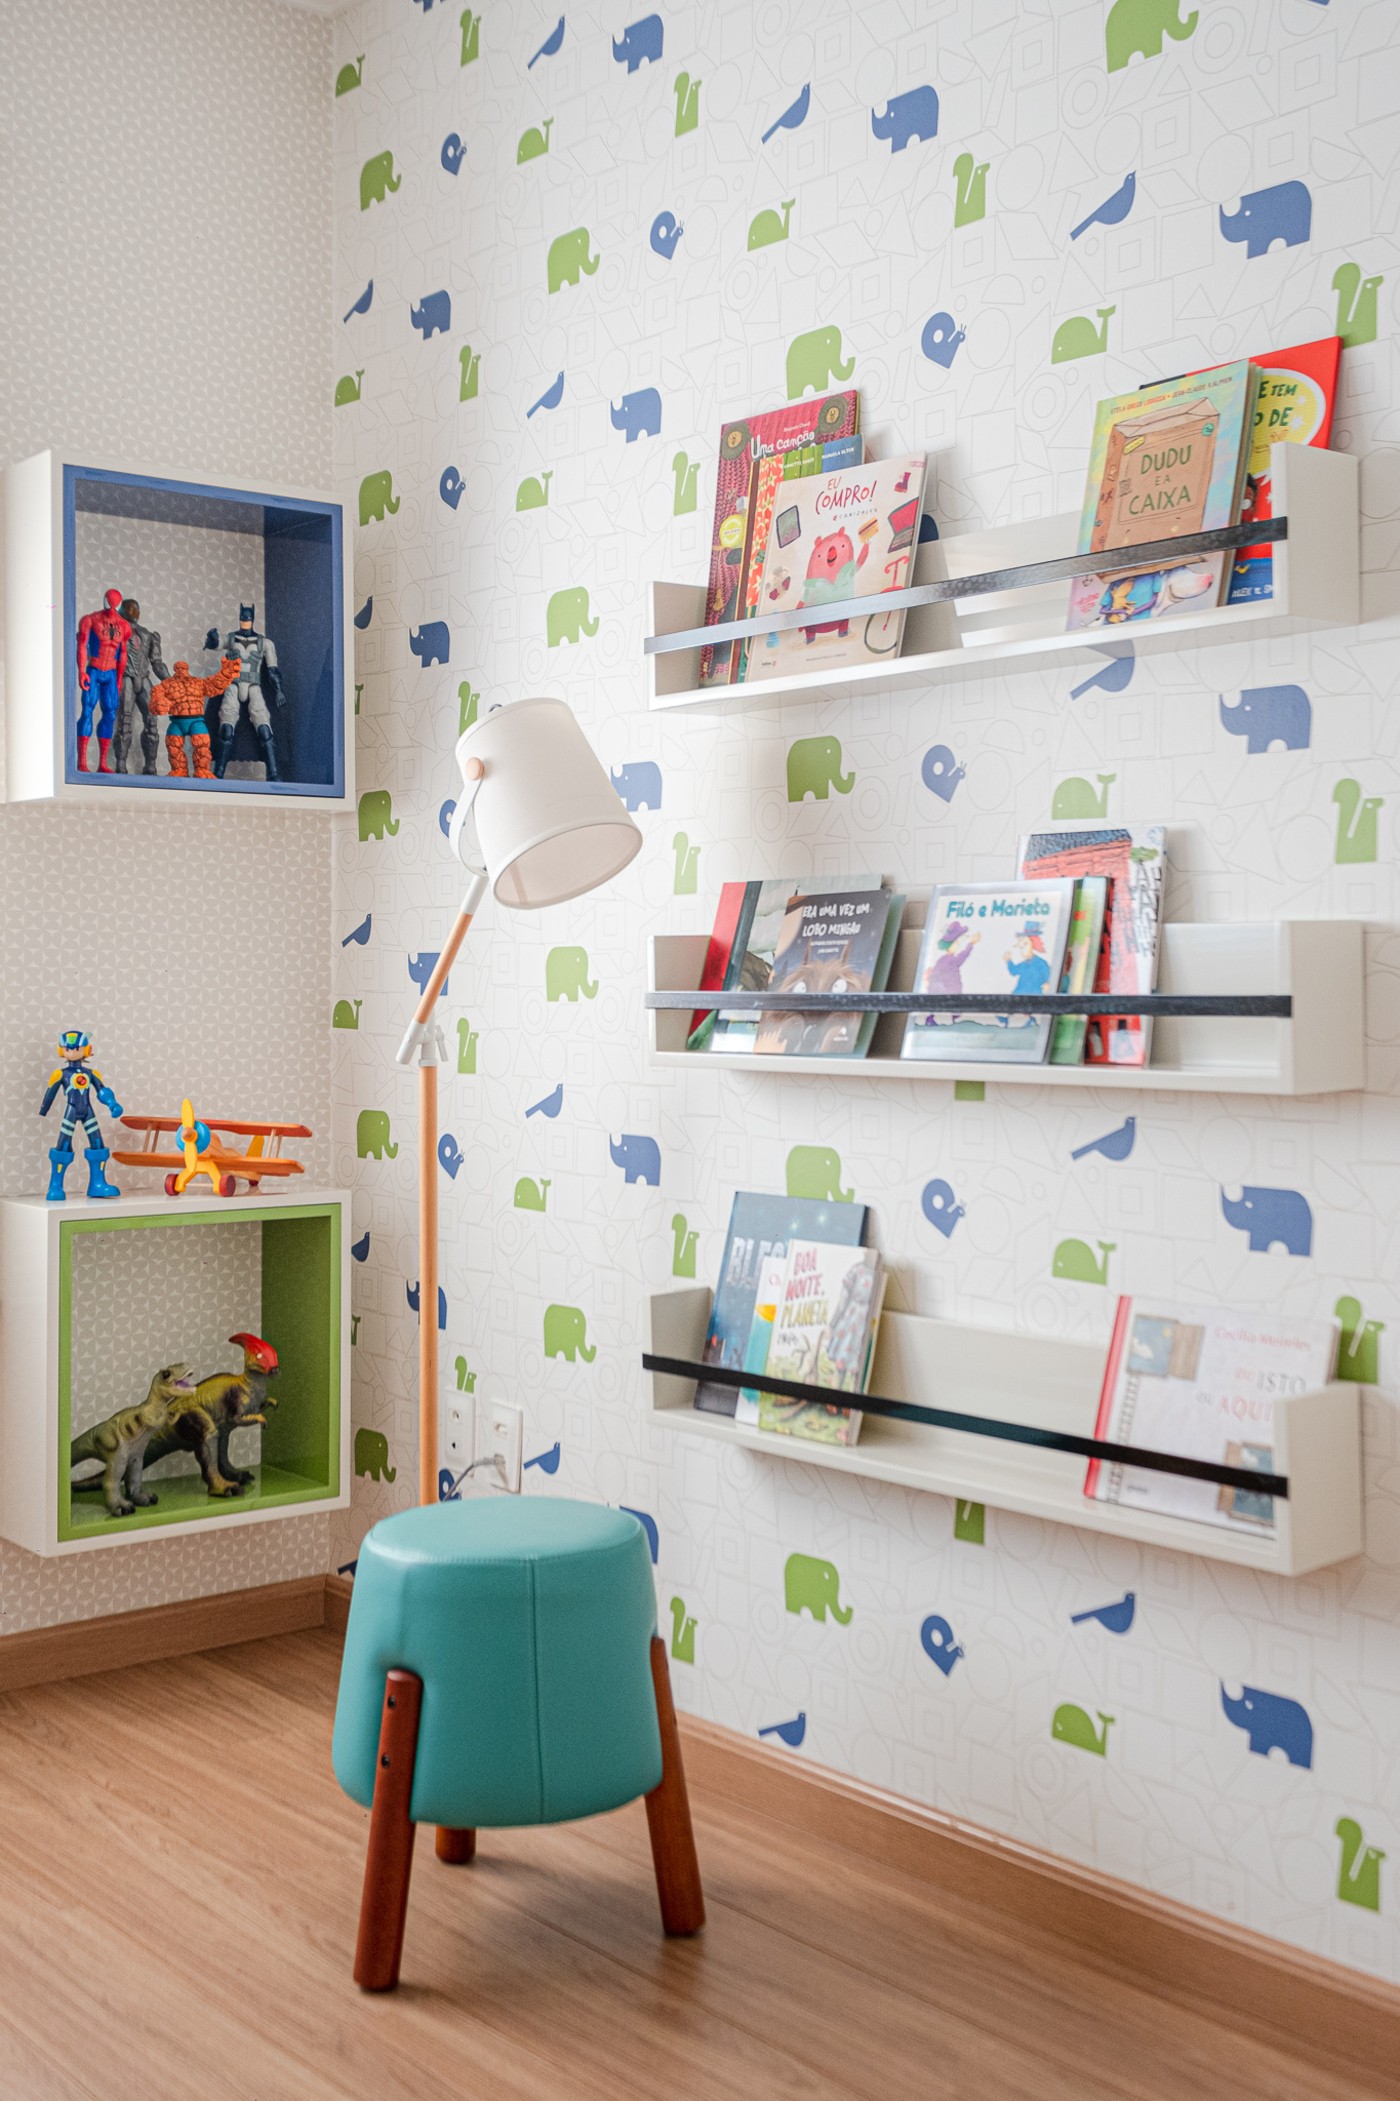 Décor do dia: quarto infantil com escorregador e área para leitura (Foto: Daniel Santos)